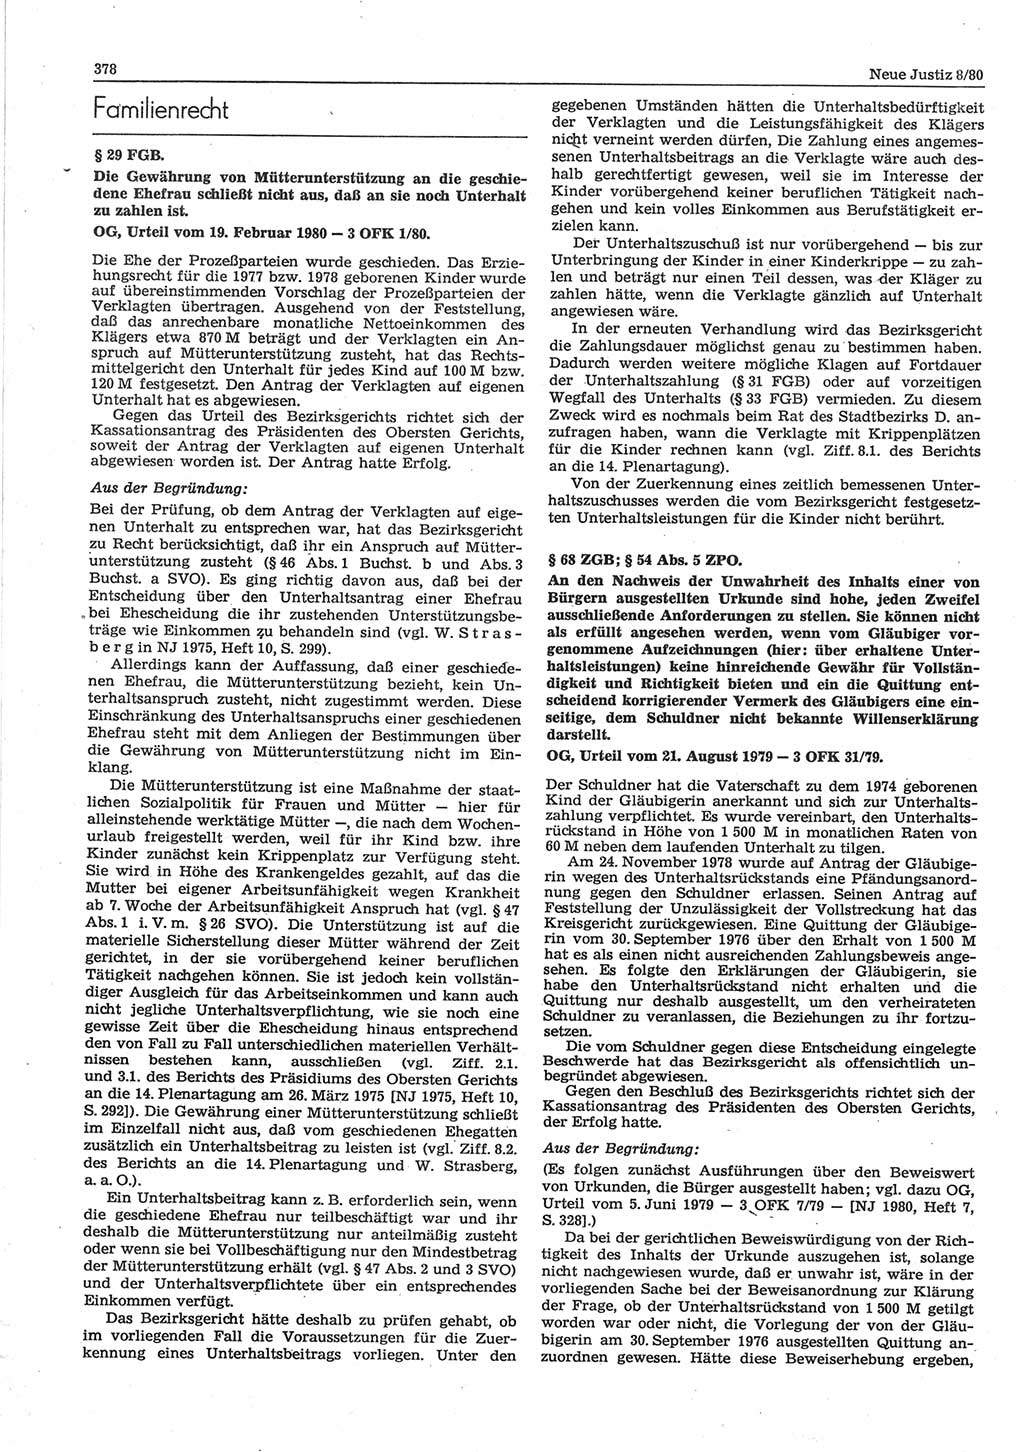 Neue Justiz (NJ), Zeitschrift für sozialistisches Recht und Gesetzlichkeit [Deutsche Demokratische Republik (DDR)], 34. Jahrgang 1980, Seite 378 (NJ DDR 1980, S. 378)